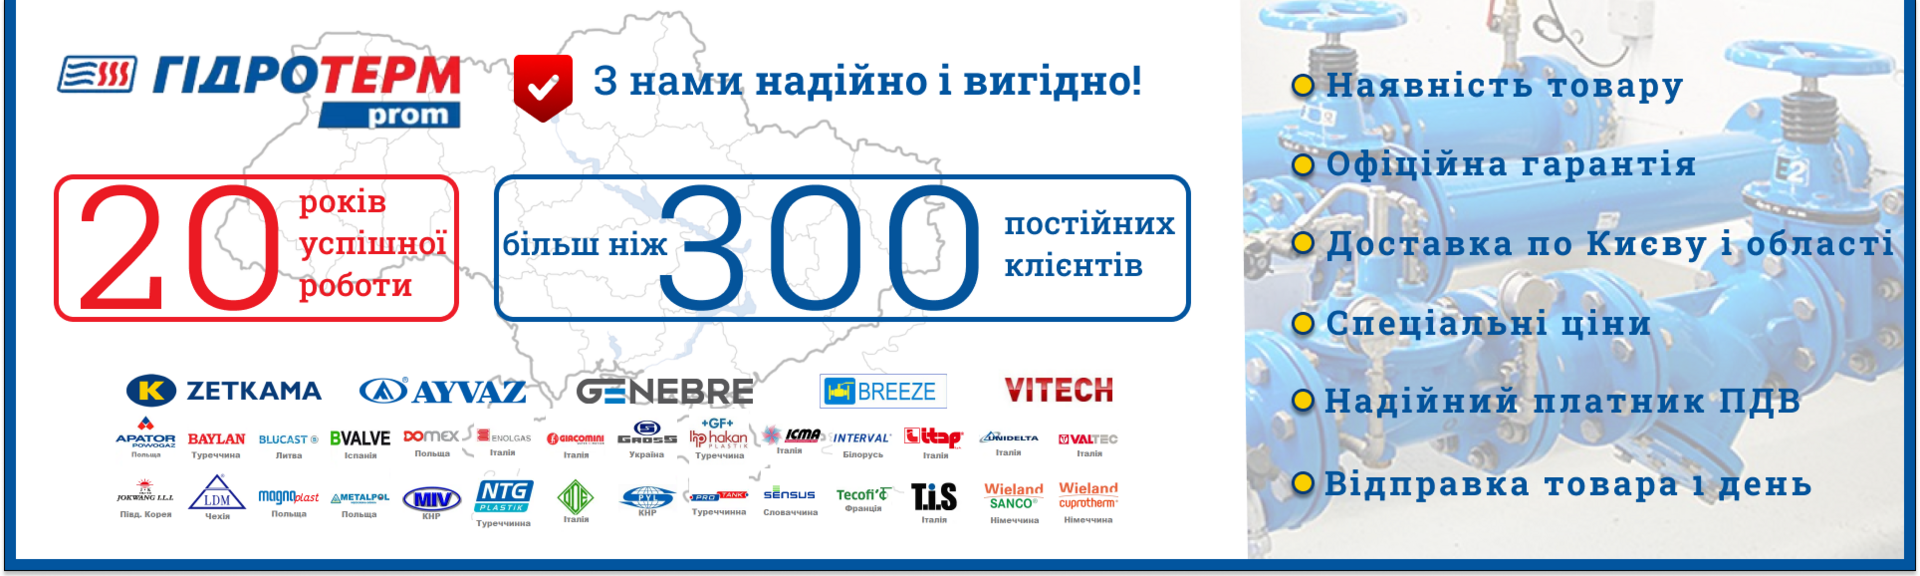 Gidroterm-Prom – это магазин запорной и регулирующей арматуры с лучшими ценами и доставкой по всей Украине